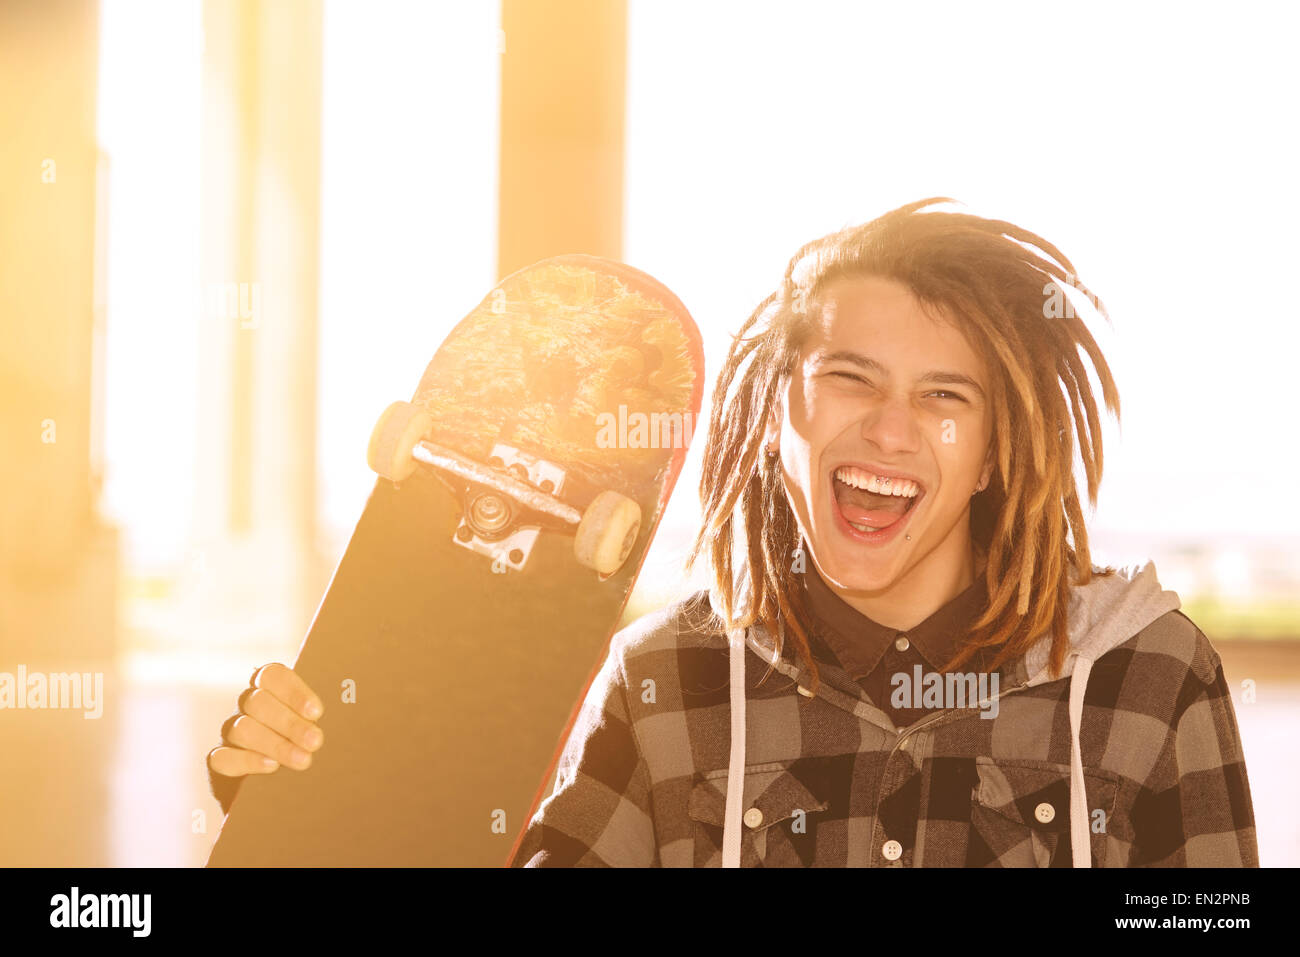 Ritratto di giovane ragazzo con lo skateboard e capelli rasta in un concetto di stile di vita caldo filtro applicato Foto Stock